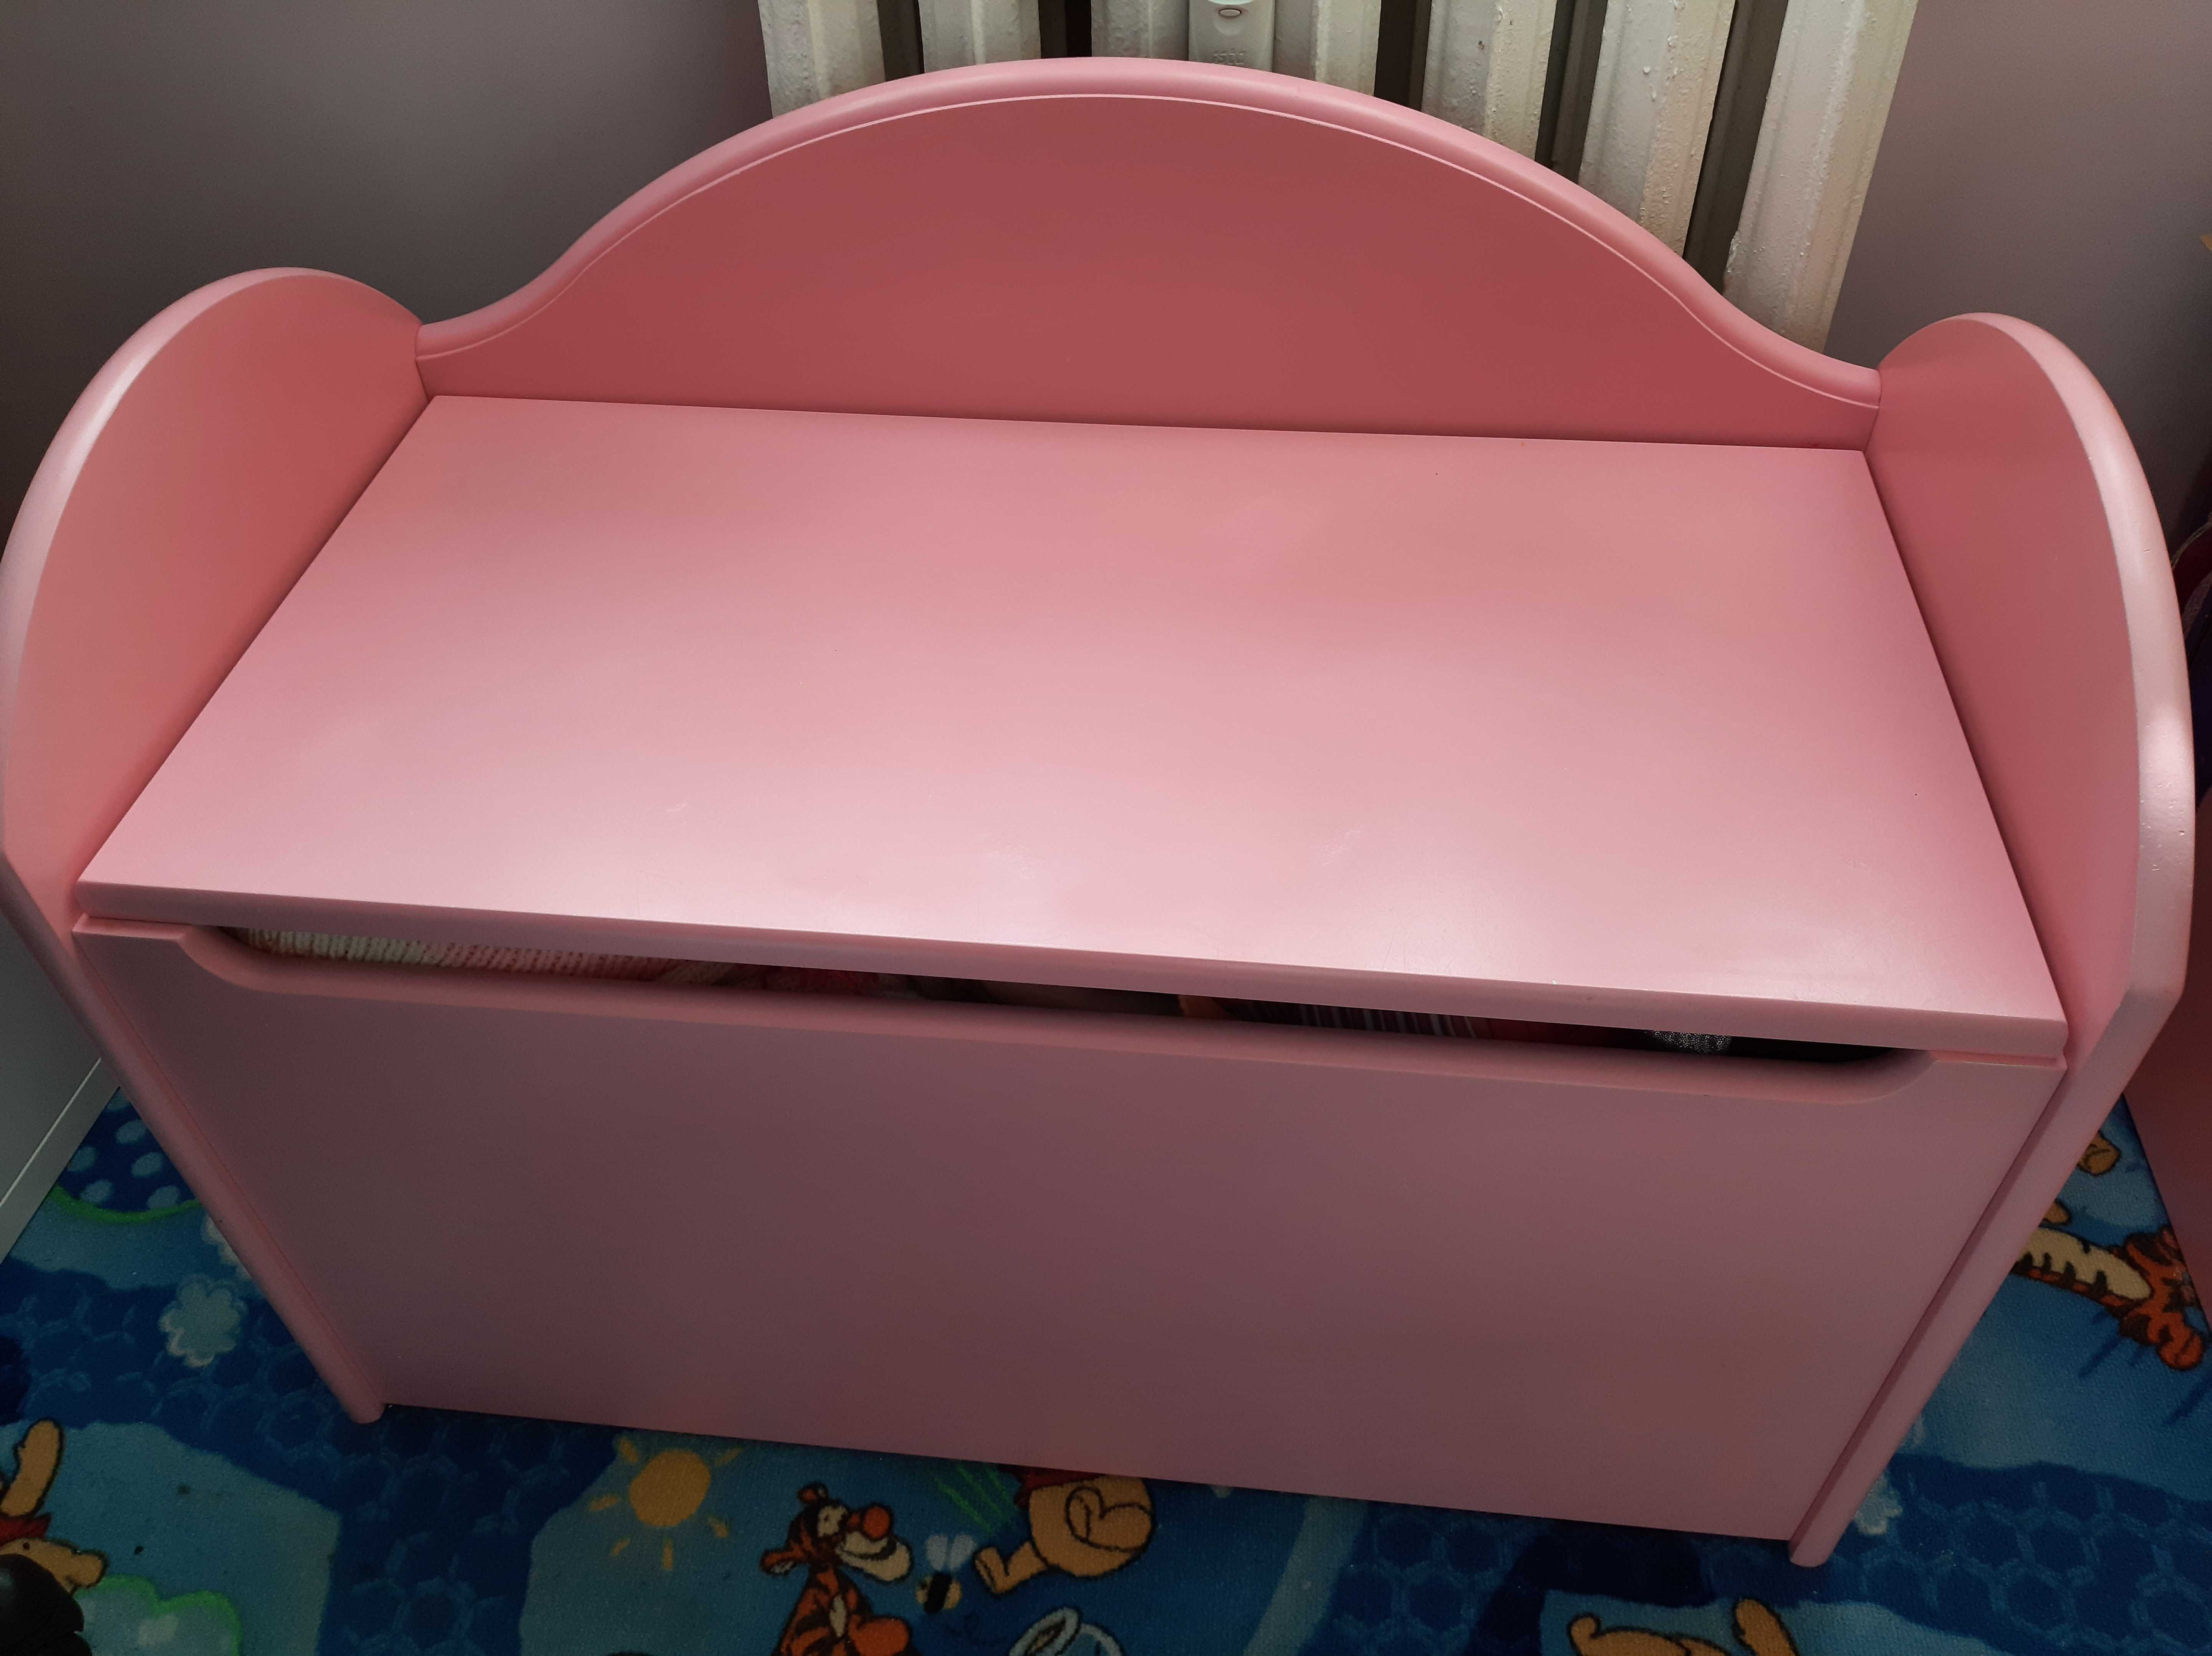 zestaw mebli BabyBest: łóżko piętrowe, komoda, drabinka, skrzynia